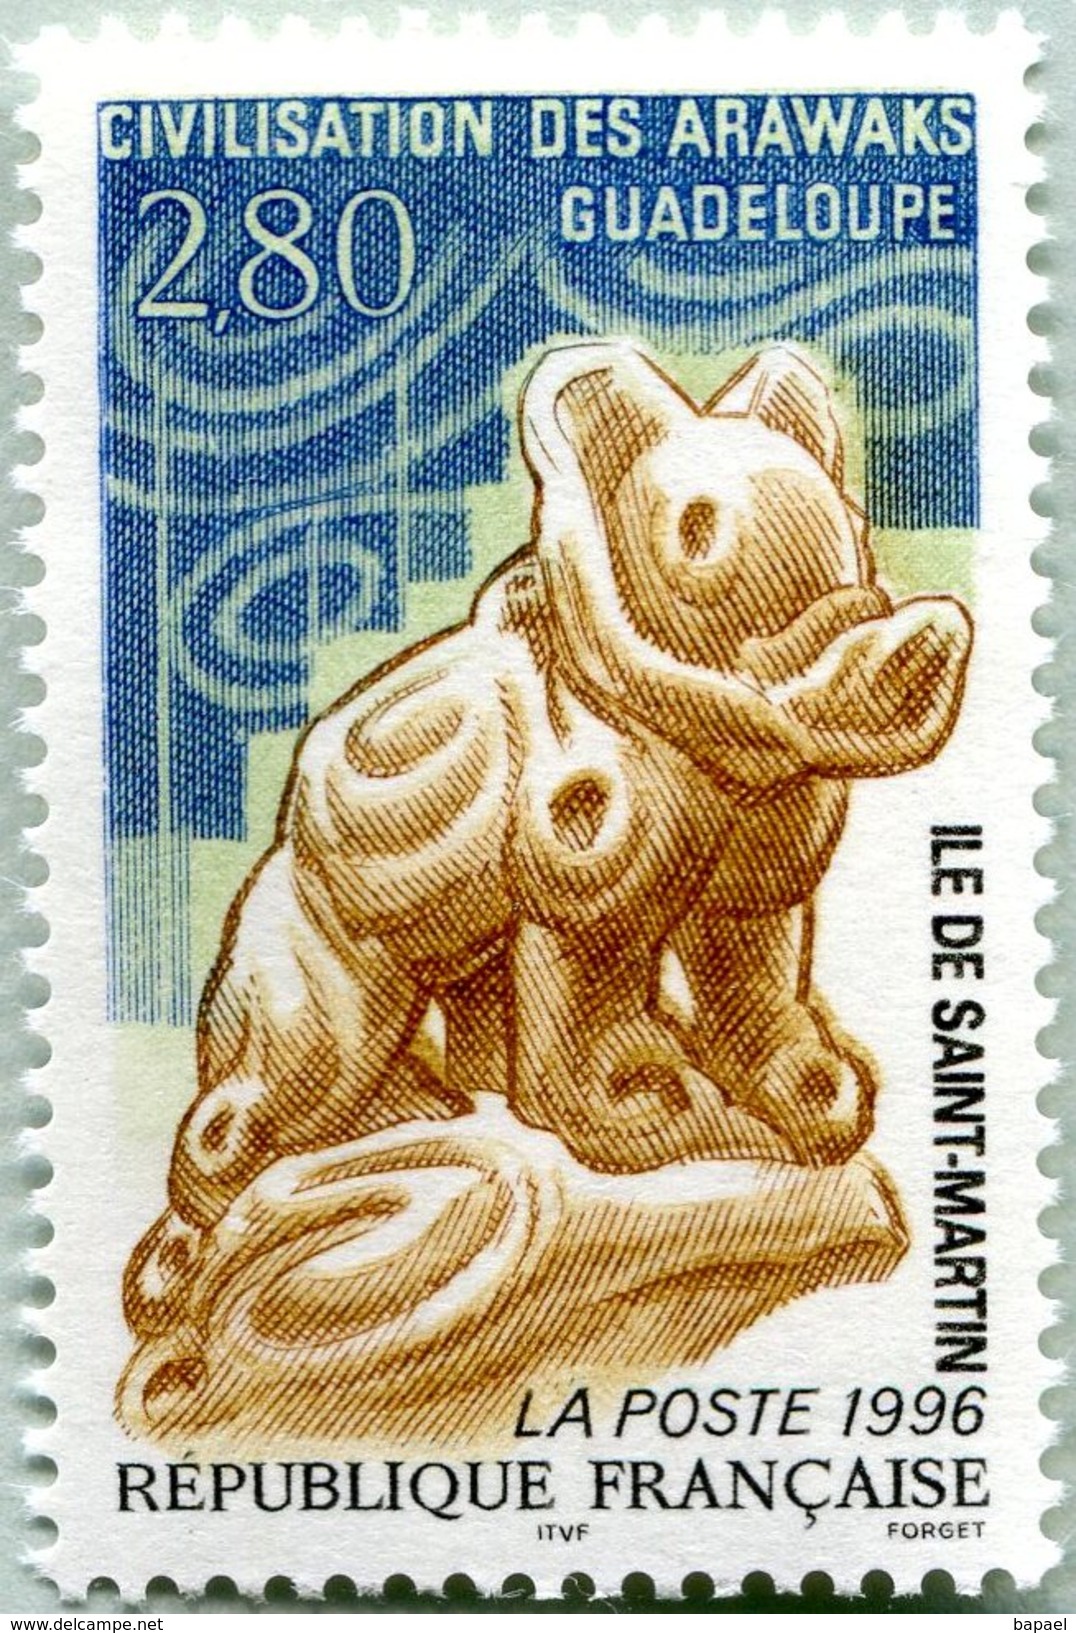 N° Yvert & Tellier 2988 - Timbre De France (1996) - MNH - Chien En Céramique (Civilisation Arawaks) - Unused Stamps